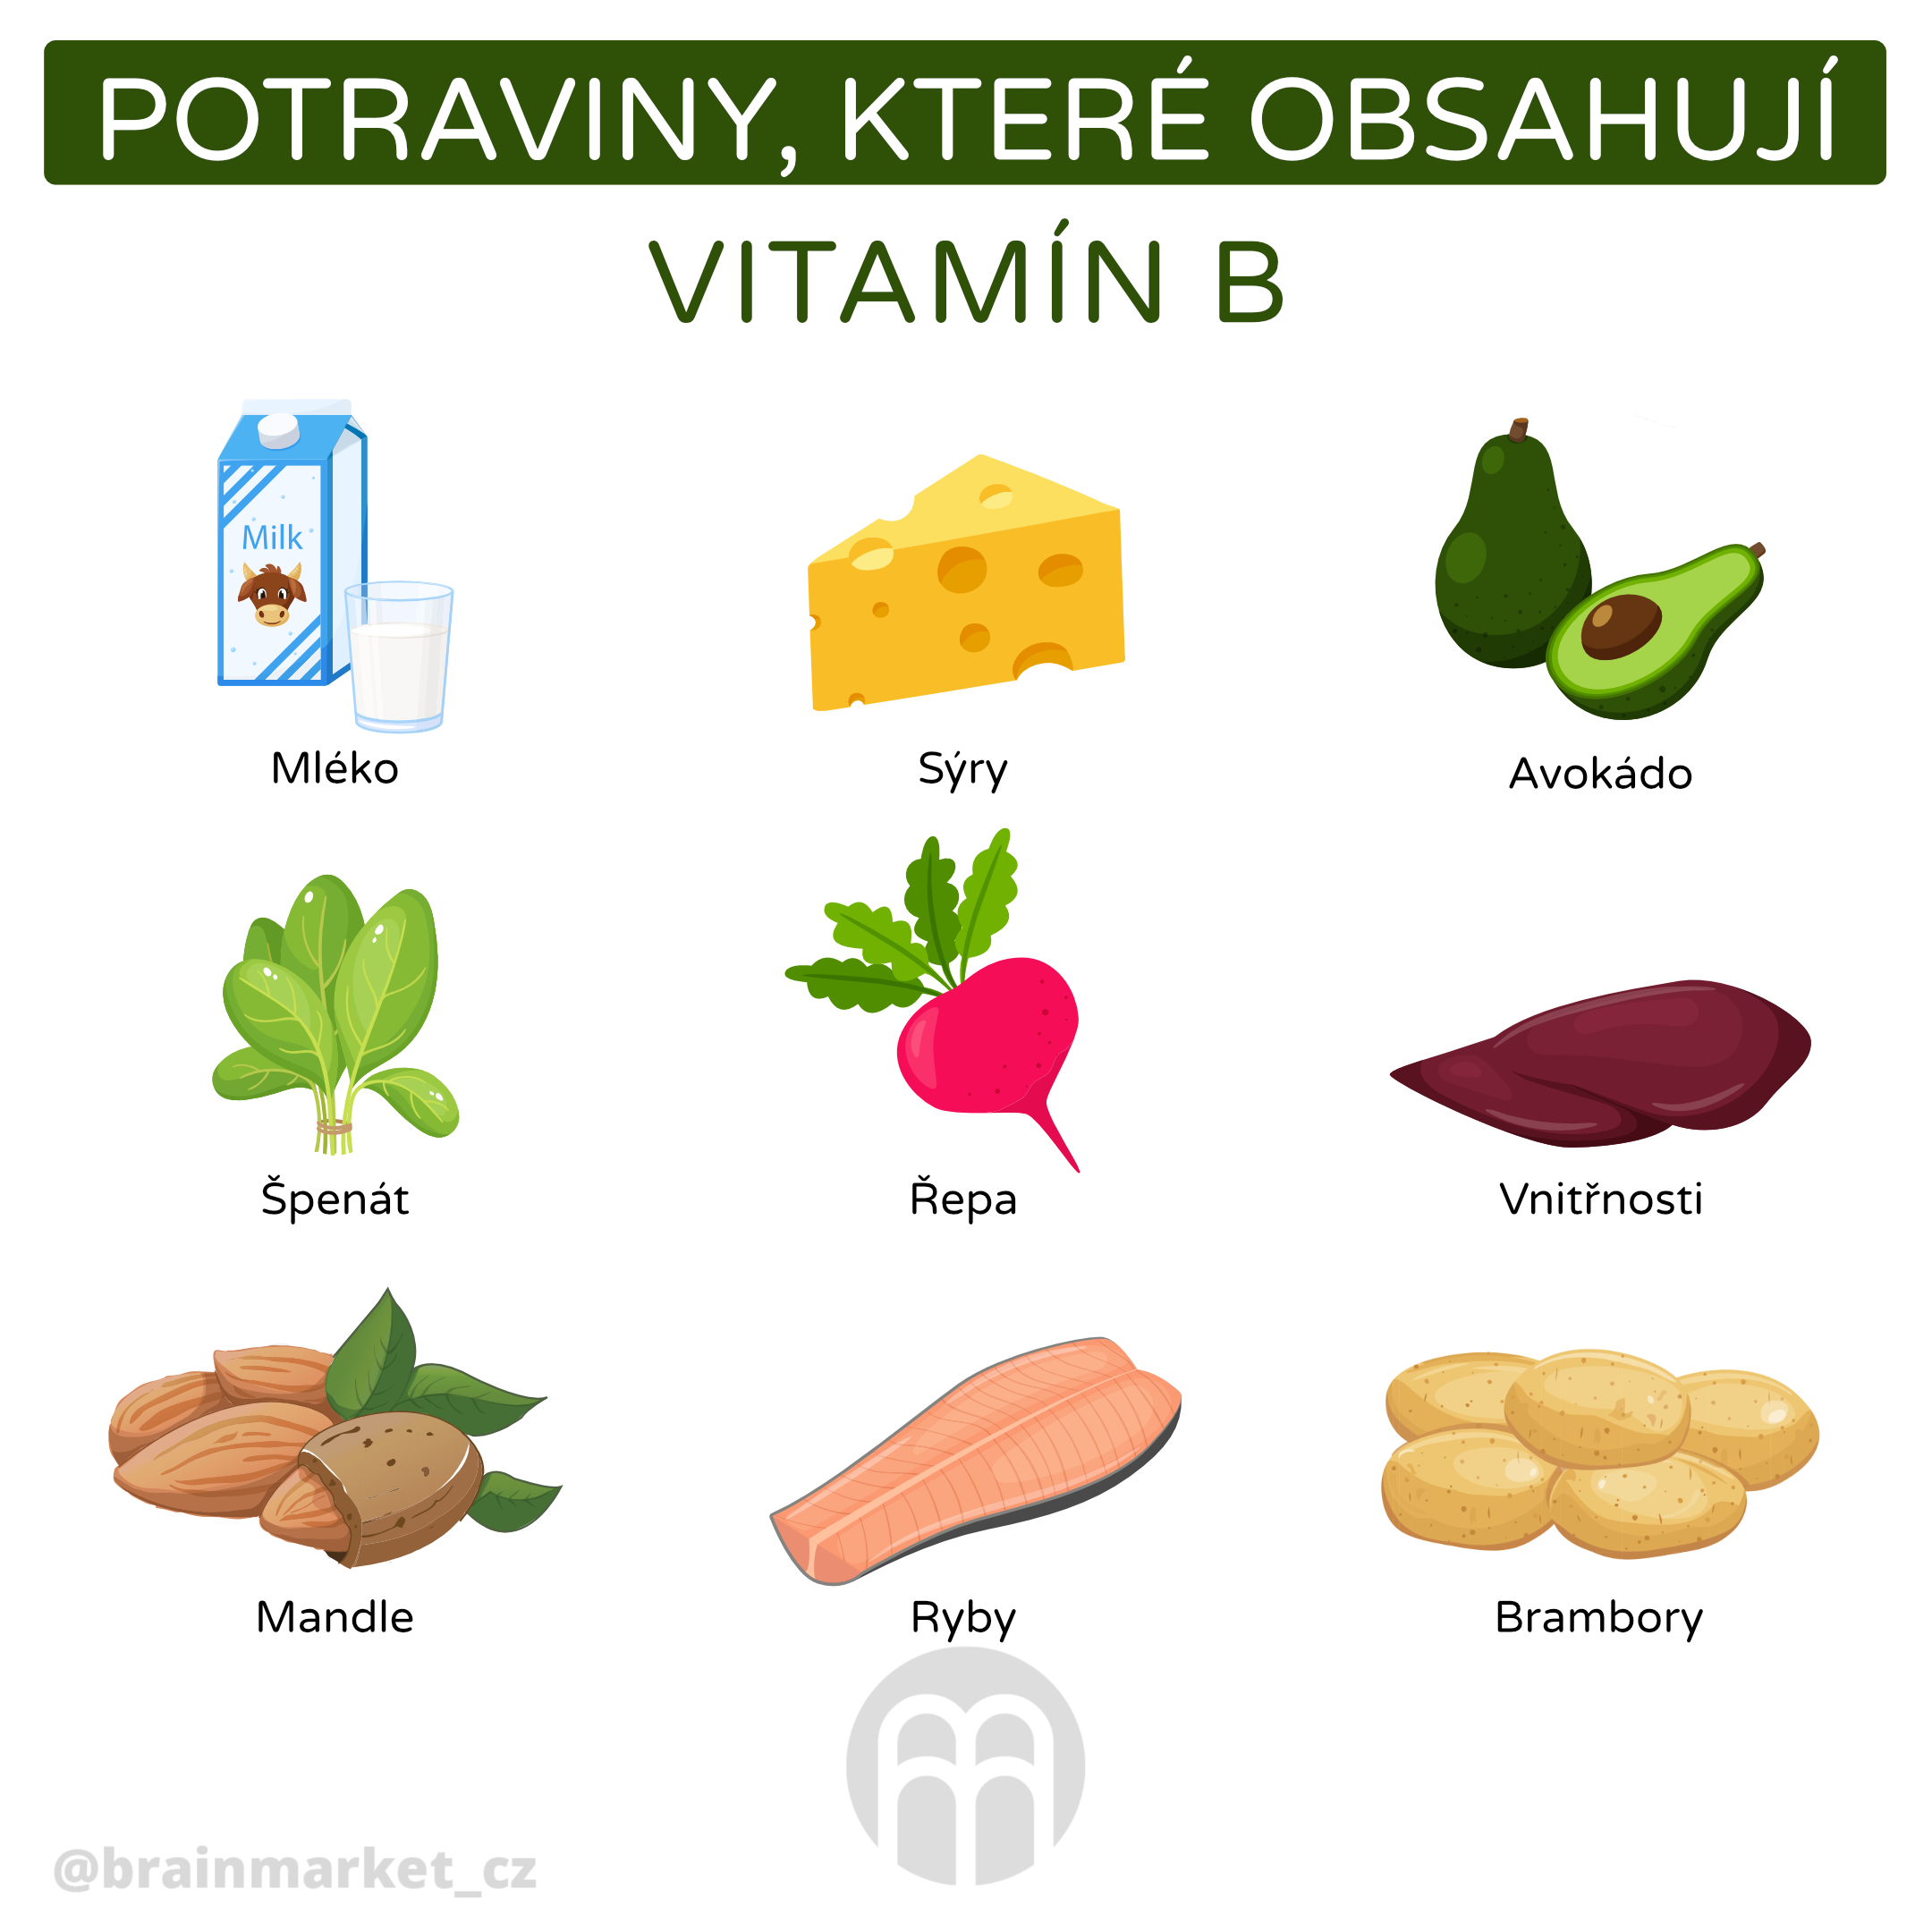 Jak dlouho můžu brát vitamín B?